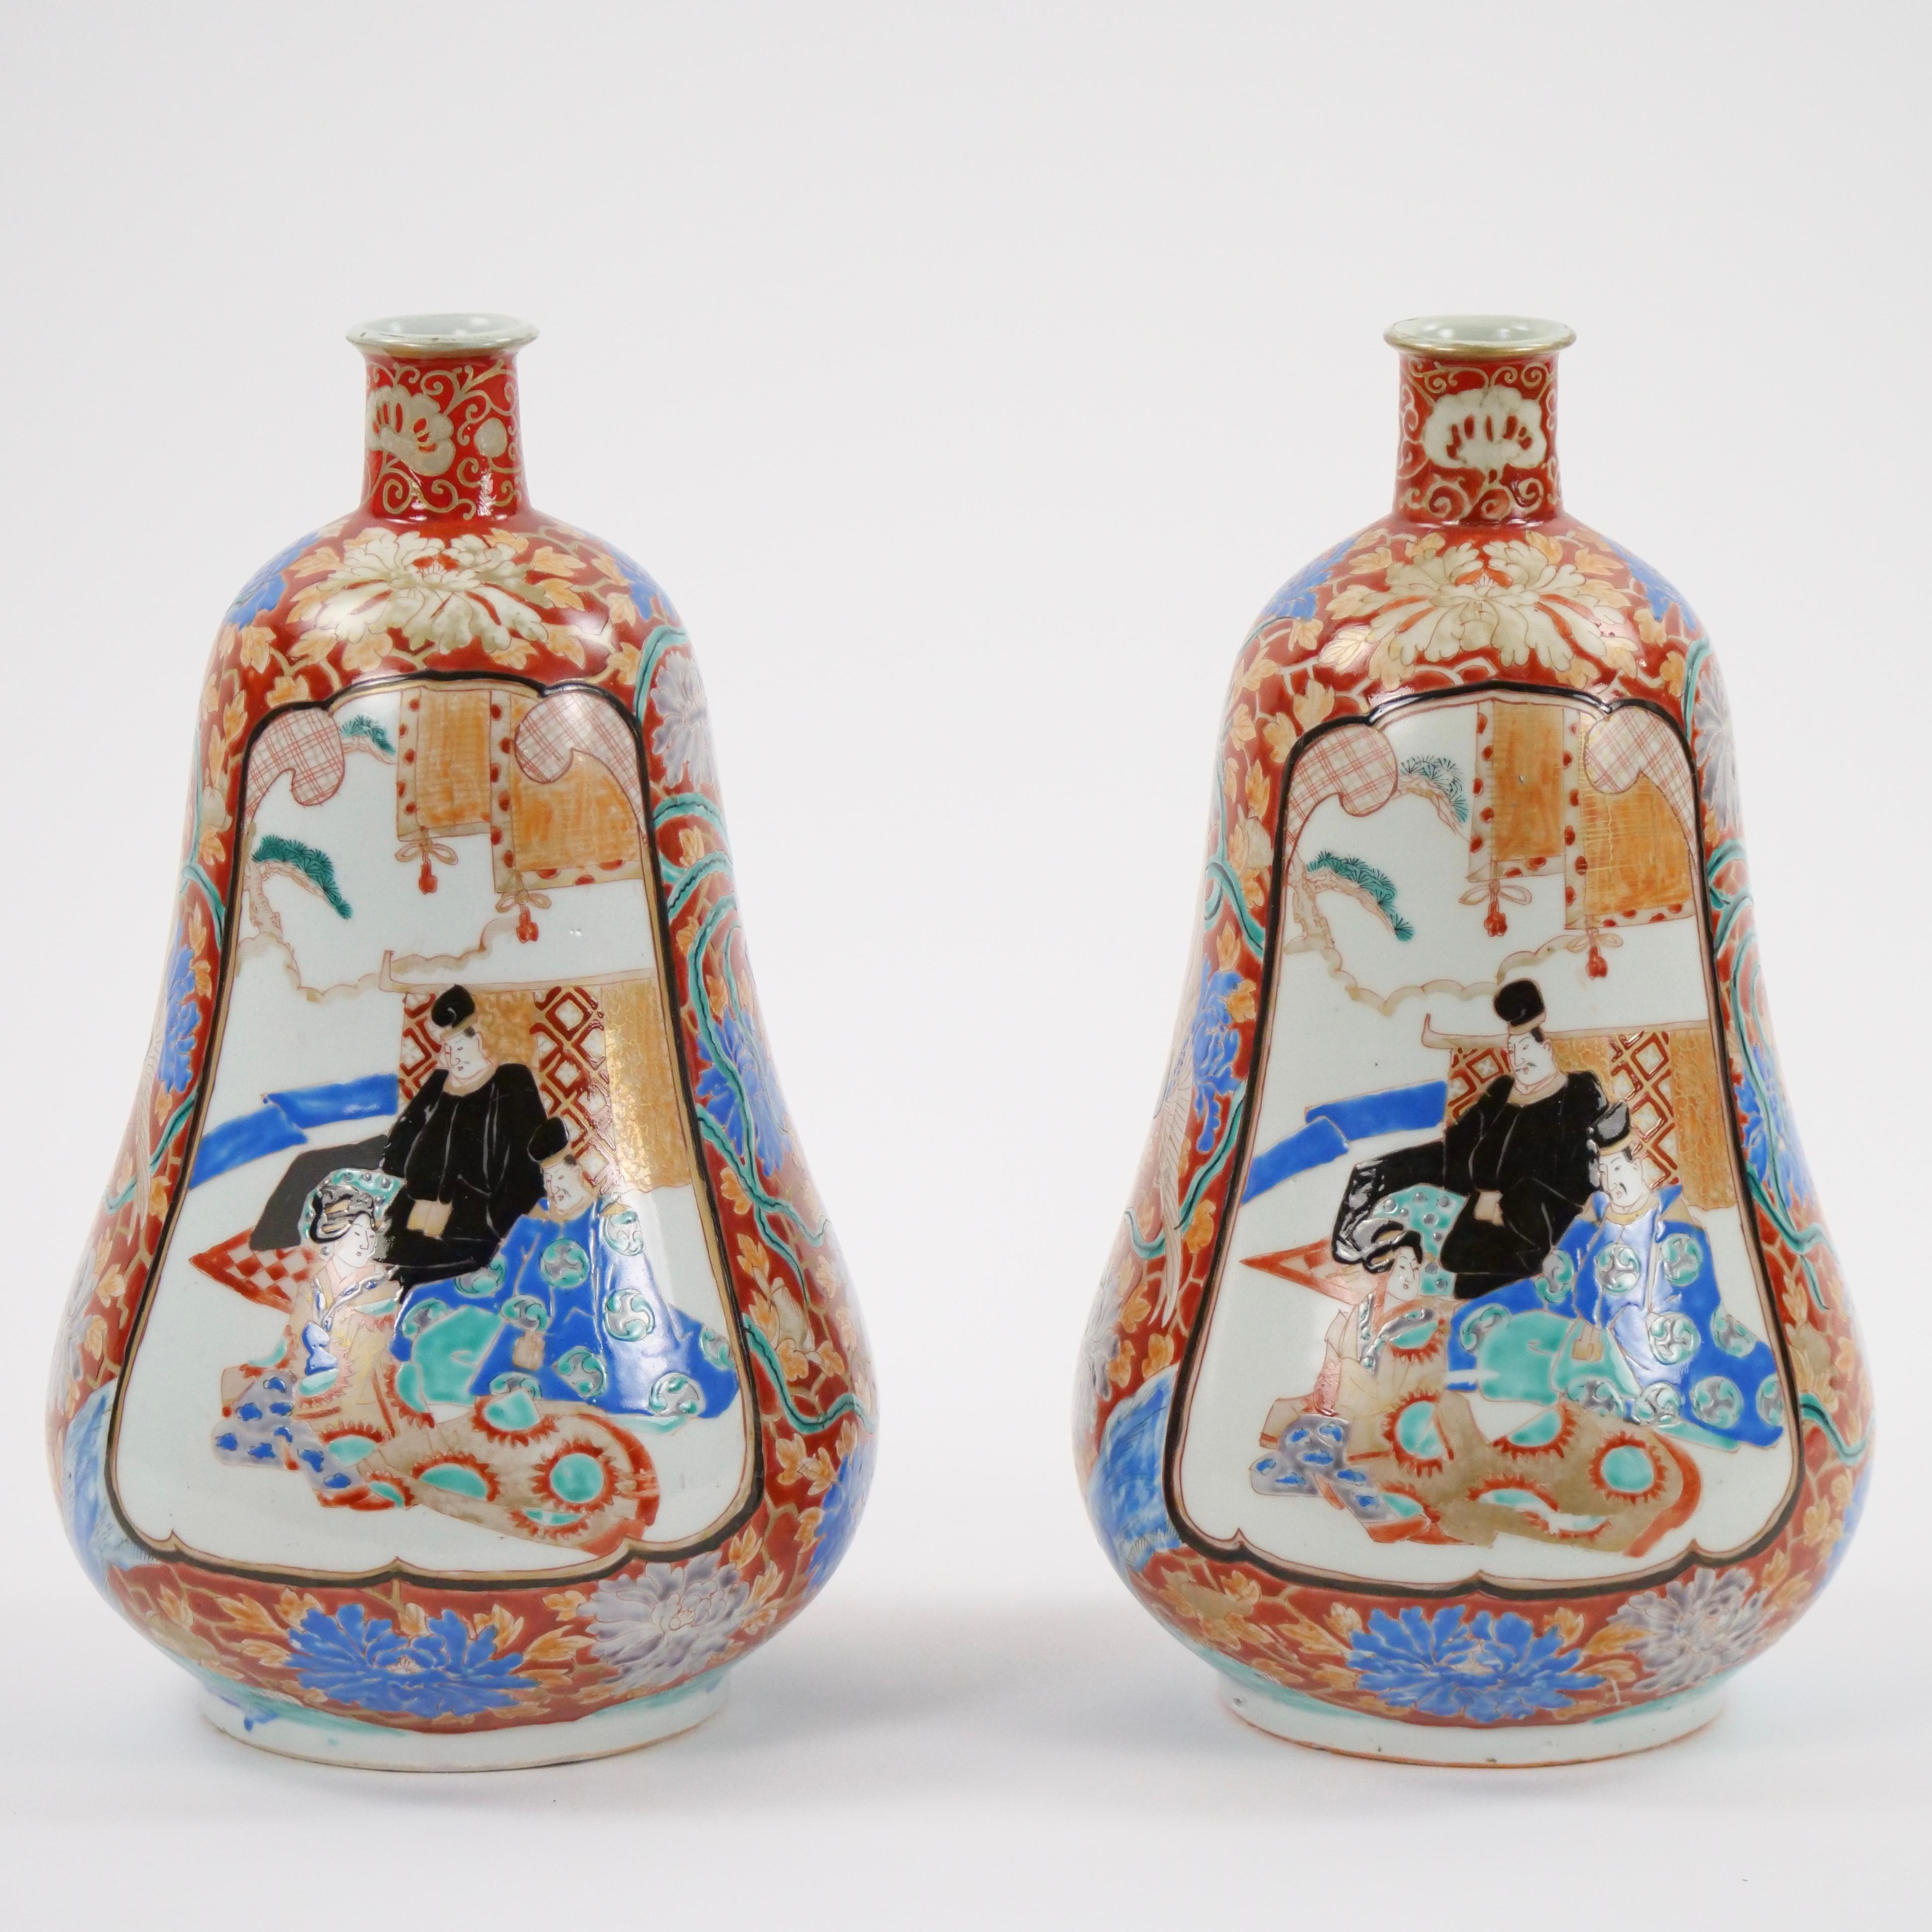 Erleben Sie den fesselnden Charme Japans mit diesem Paar Vasen aus Imari-Porzellan in Kürbisform. Diese Vasen sind ein schönes Beispiel für den berühmten Imari-Stil, der mit seinen komplizierten Mustern und seiner lebhaften Farbpalette die Herzen